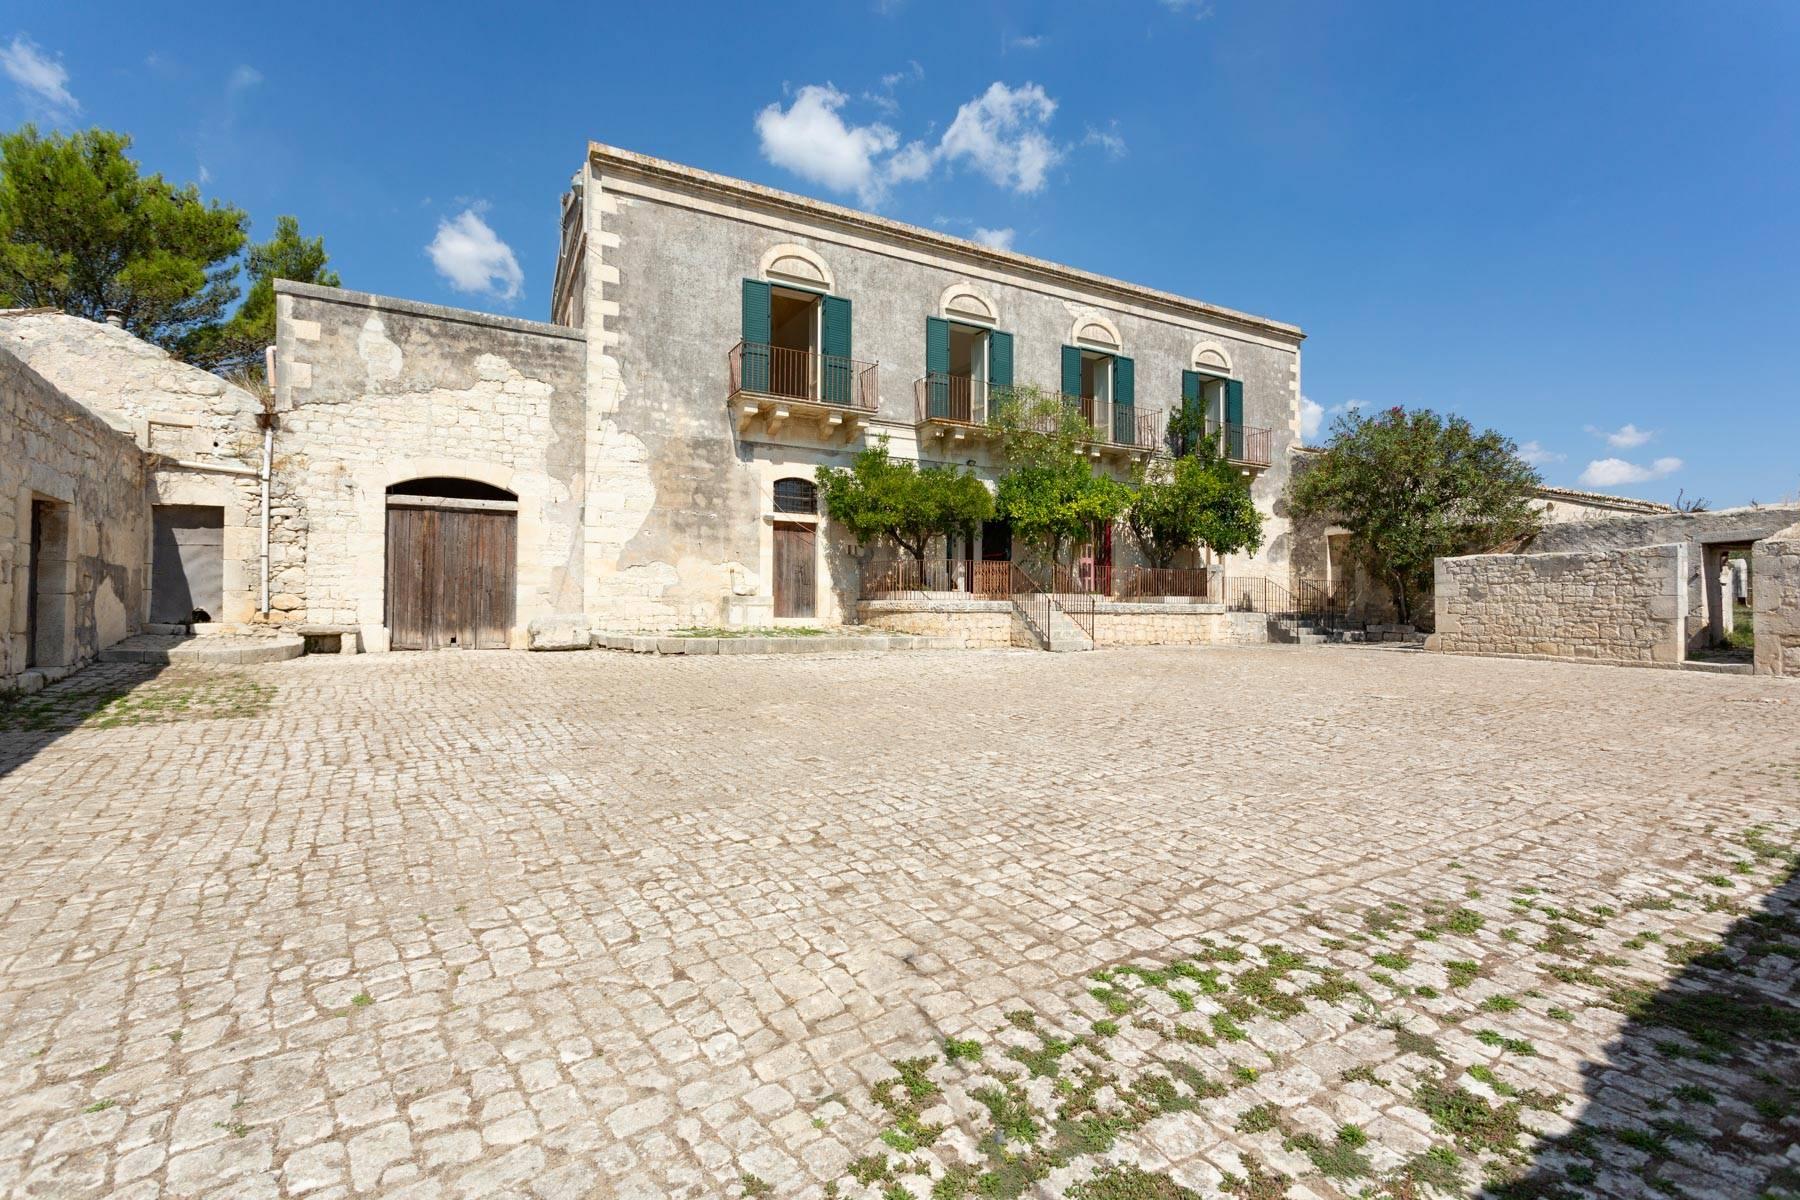 Historic Villa in the Sicilian countryside - 5